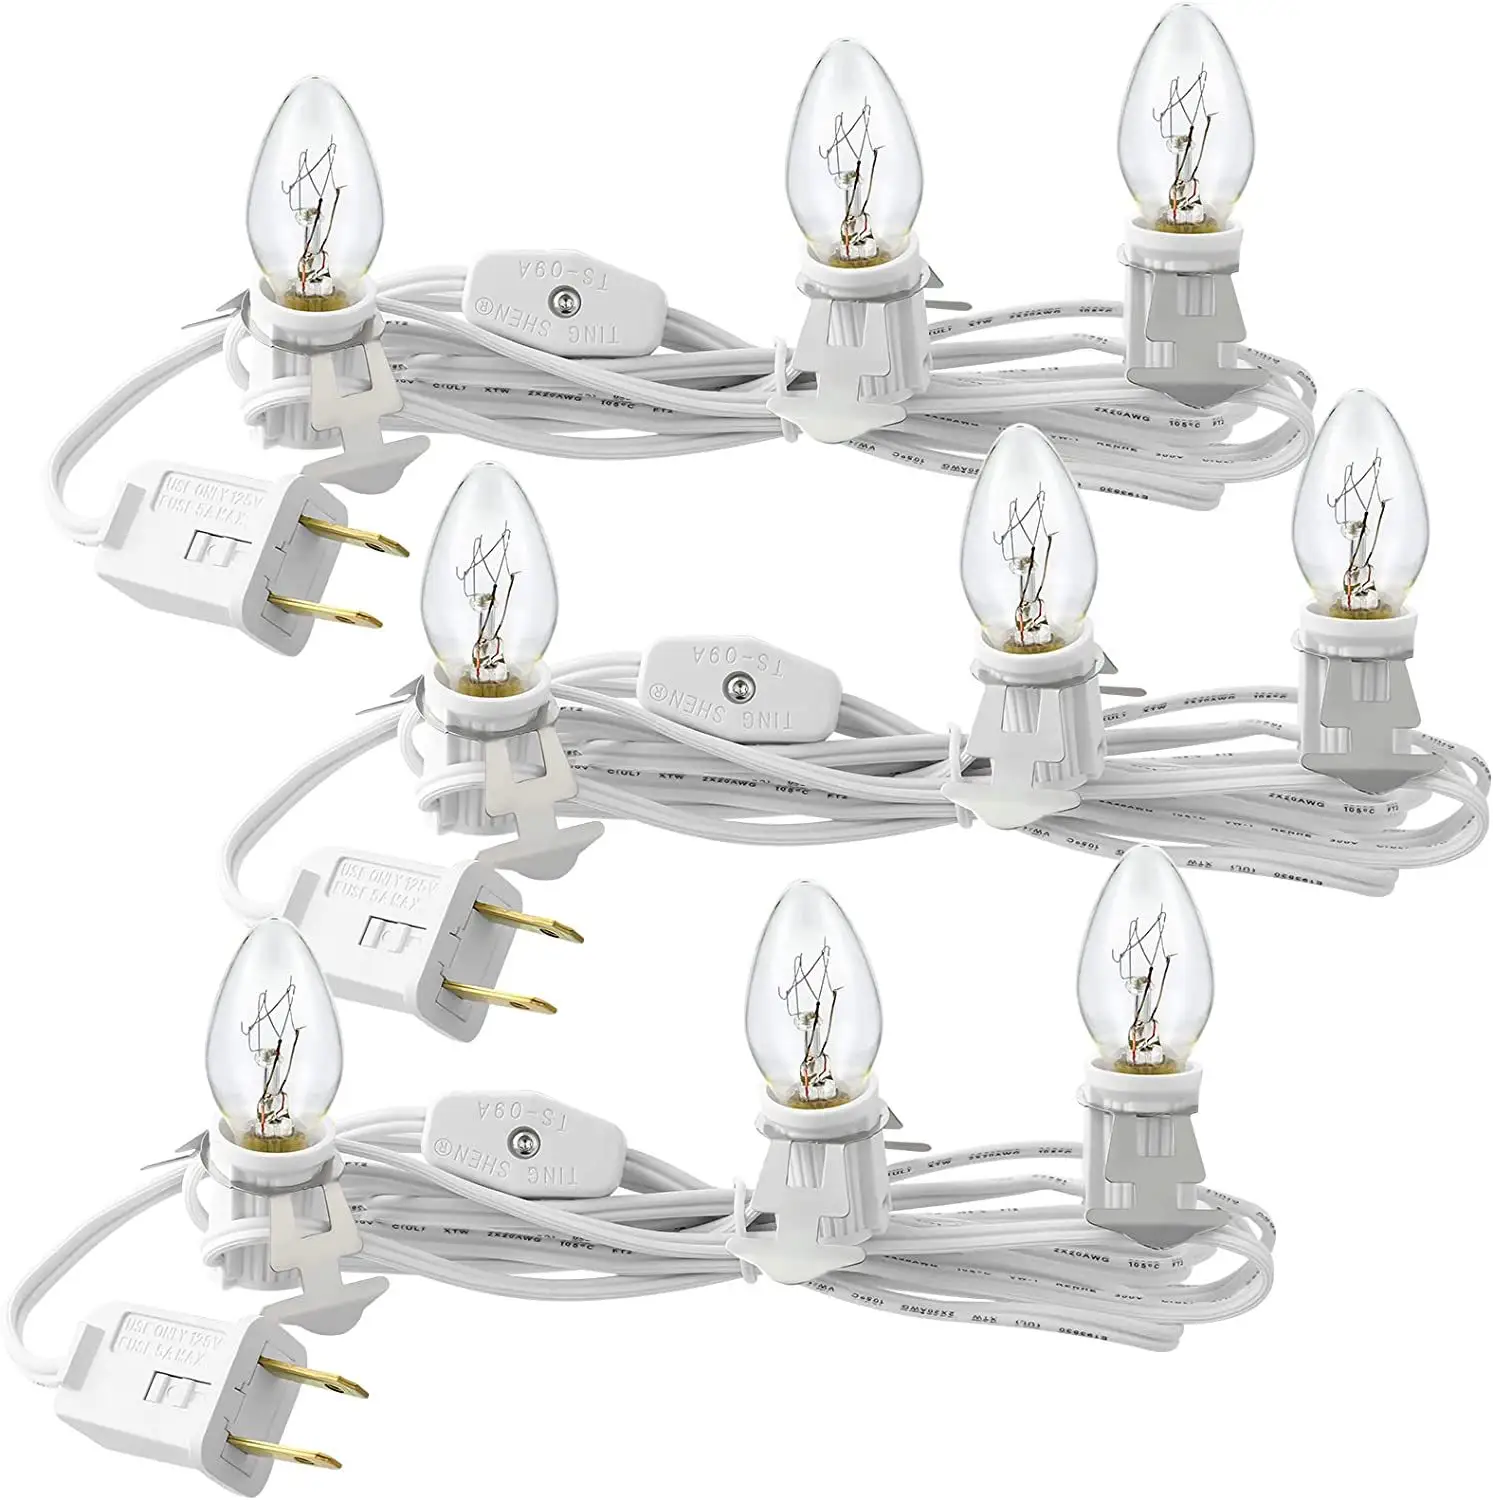 American Standard LED Light Base Socket Jack-o'-lanterna cabo de alimentação com switch plug adequado para decoração do feriado